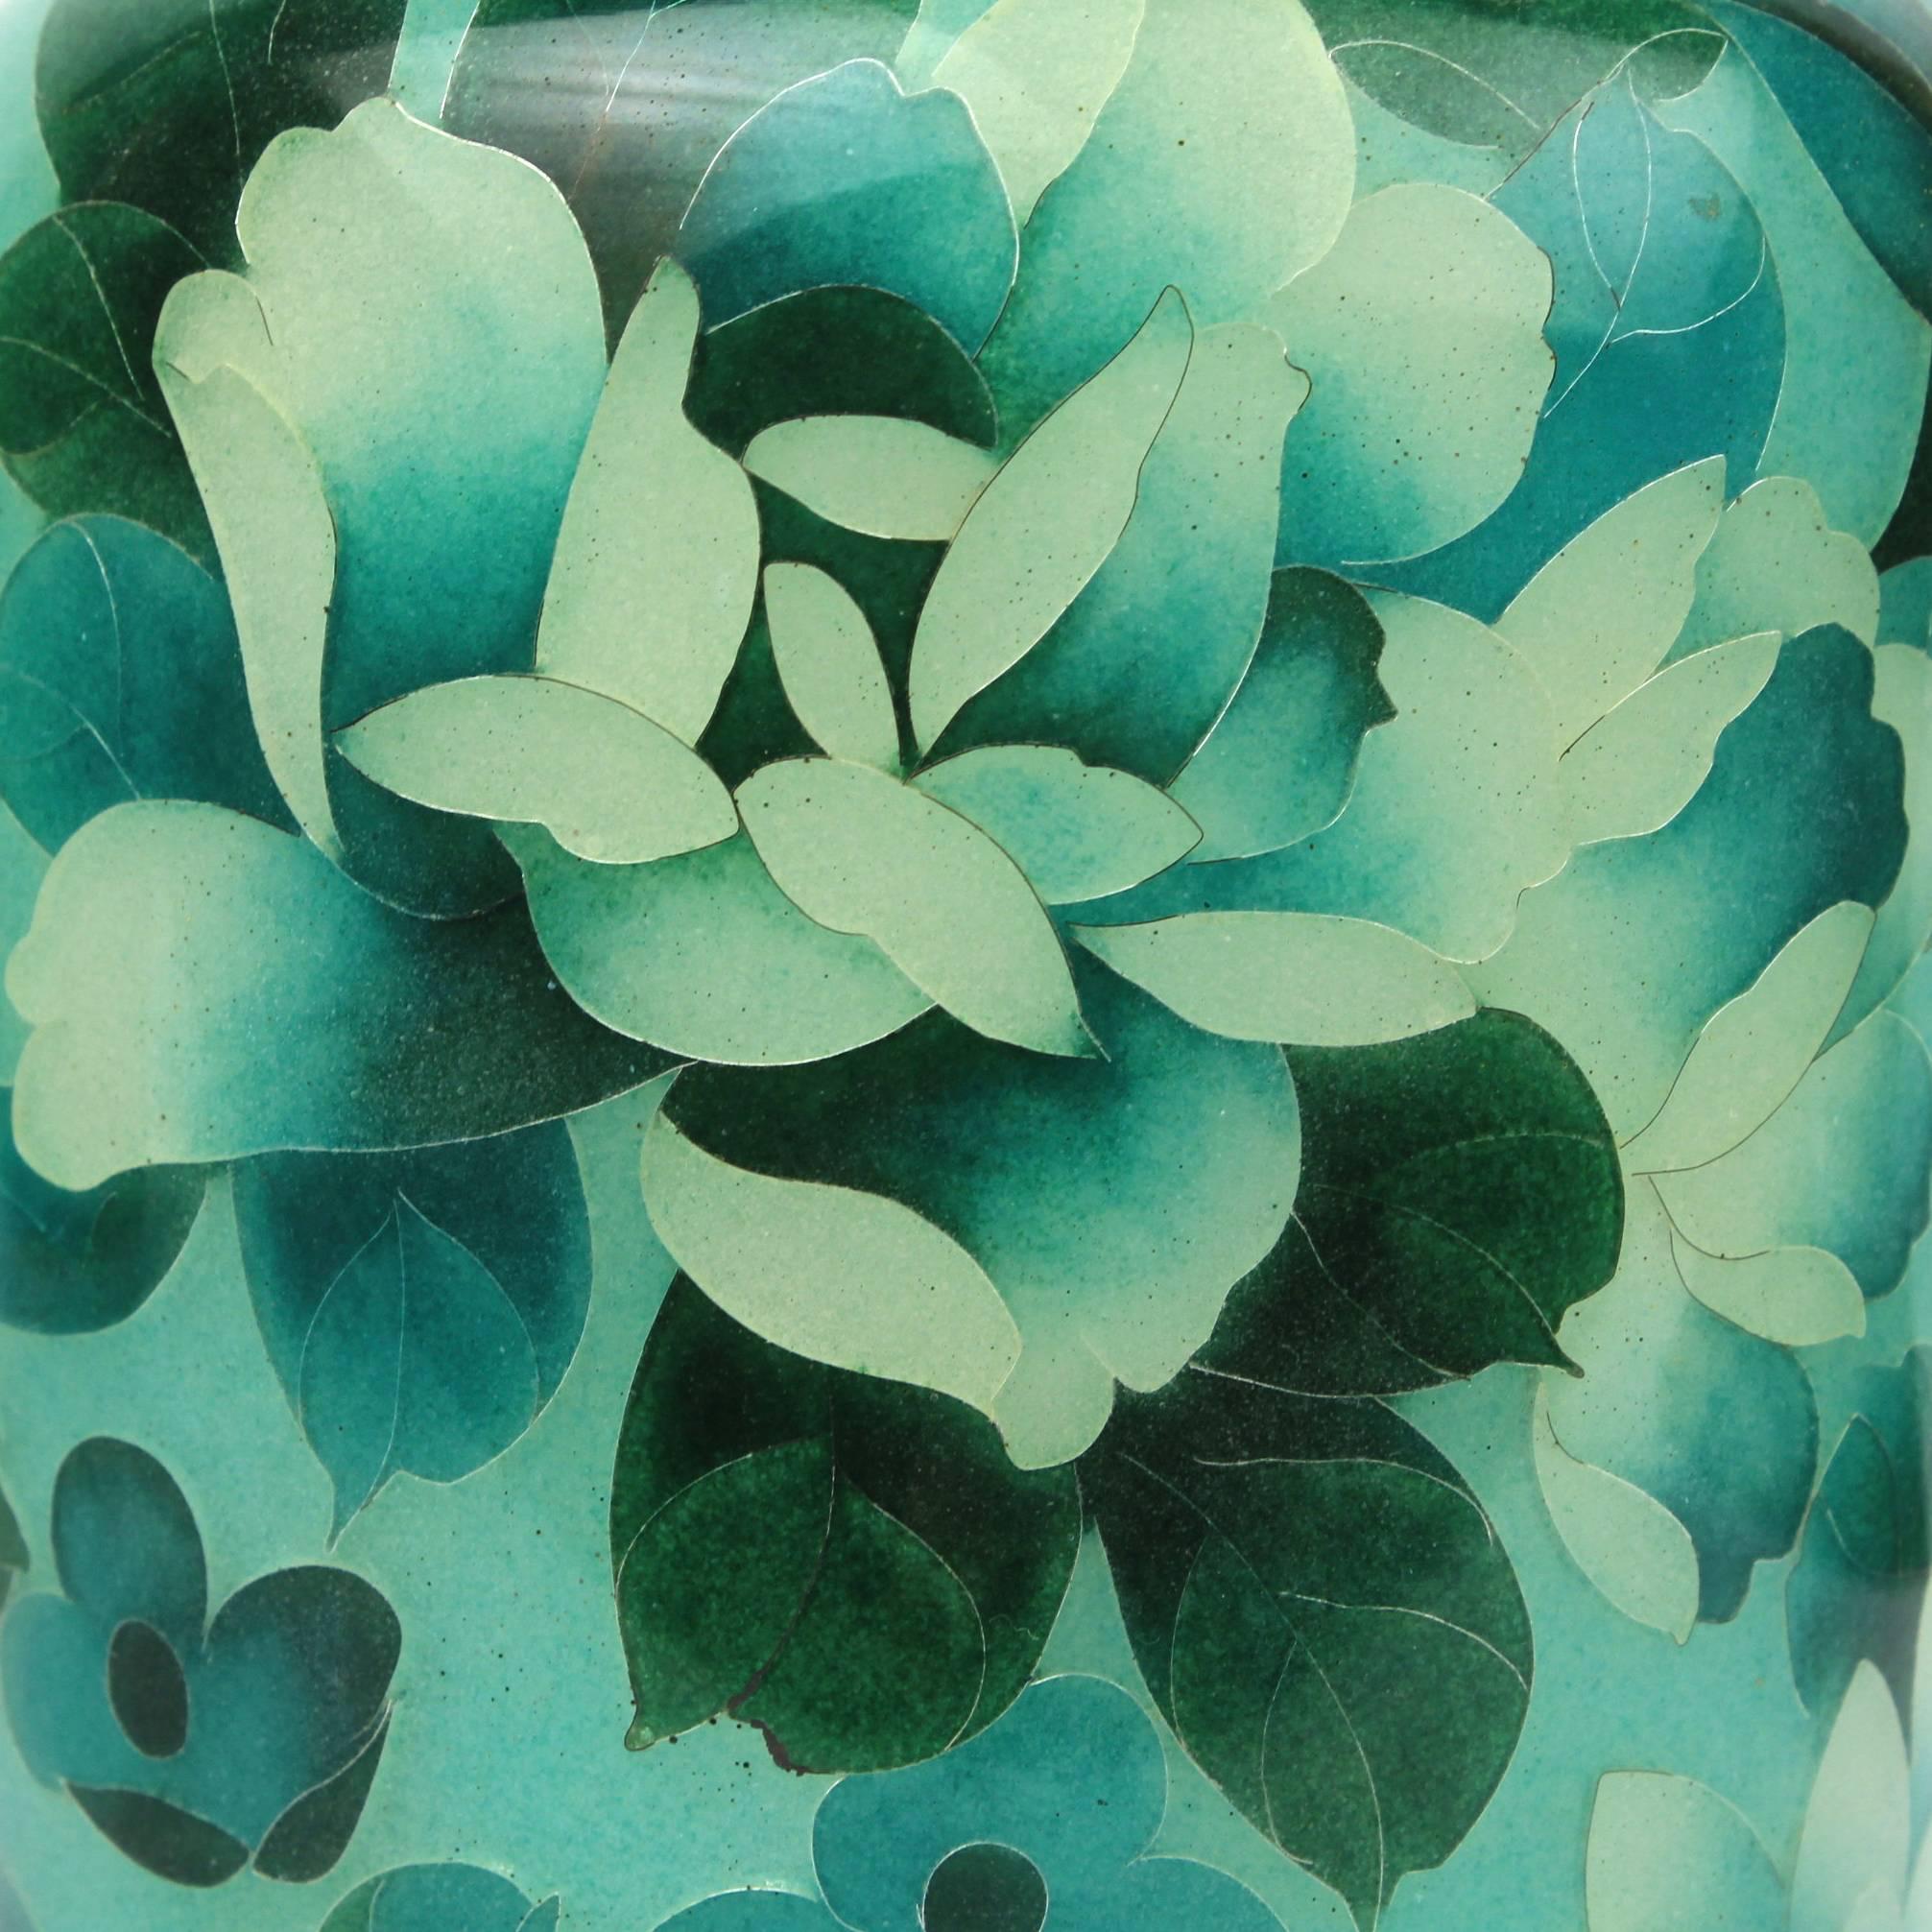 Cloissoné Japanese Green Plique-à-jour Enamel or Cloisonne Vase